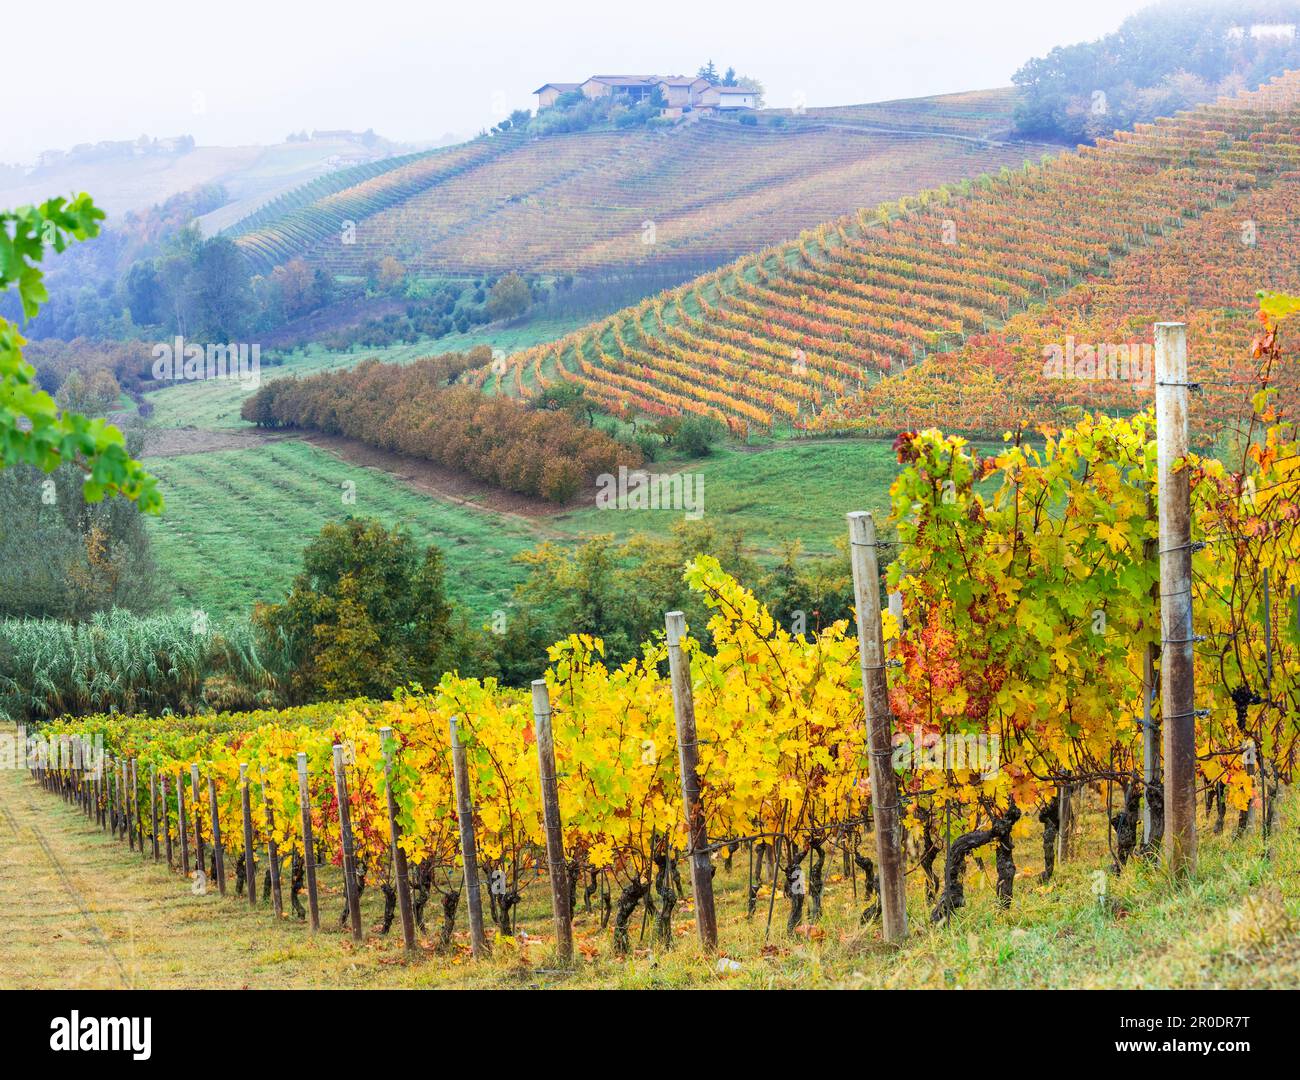 Pittoresque automne vignobles de vigne dans le Piémont - célèbre région viticole de l'Italie. Paysage italien de la nature Banque D'Images